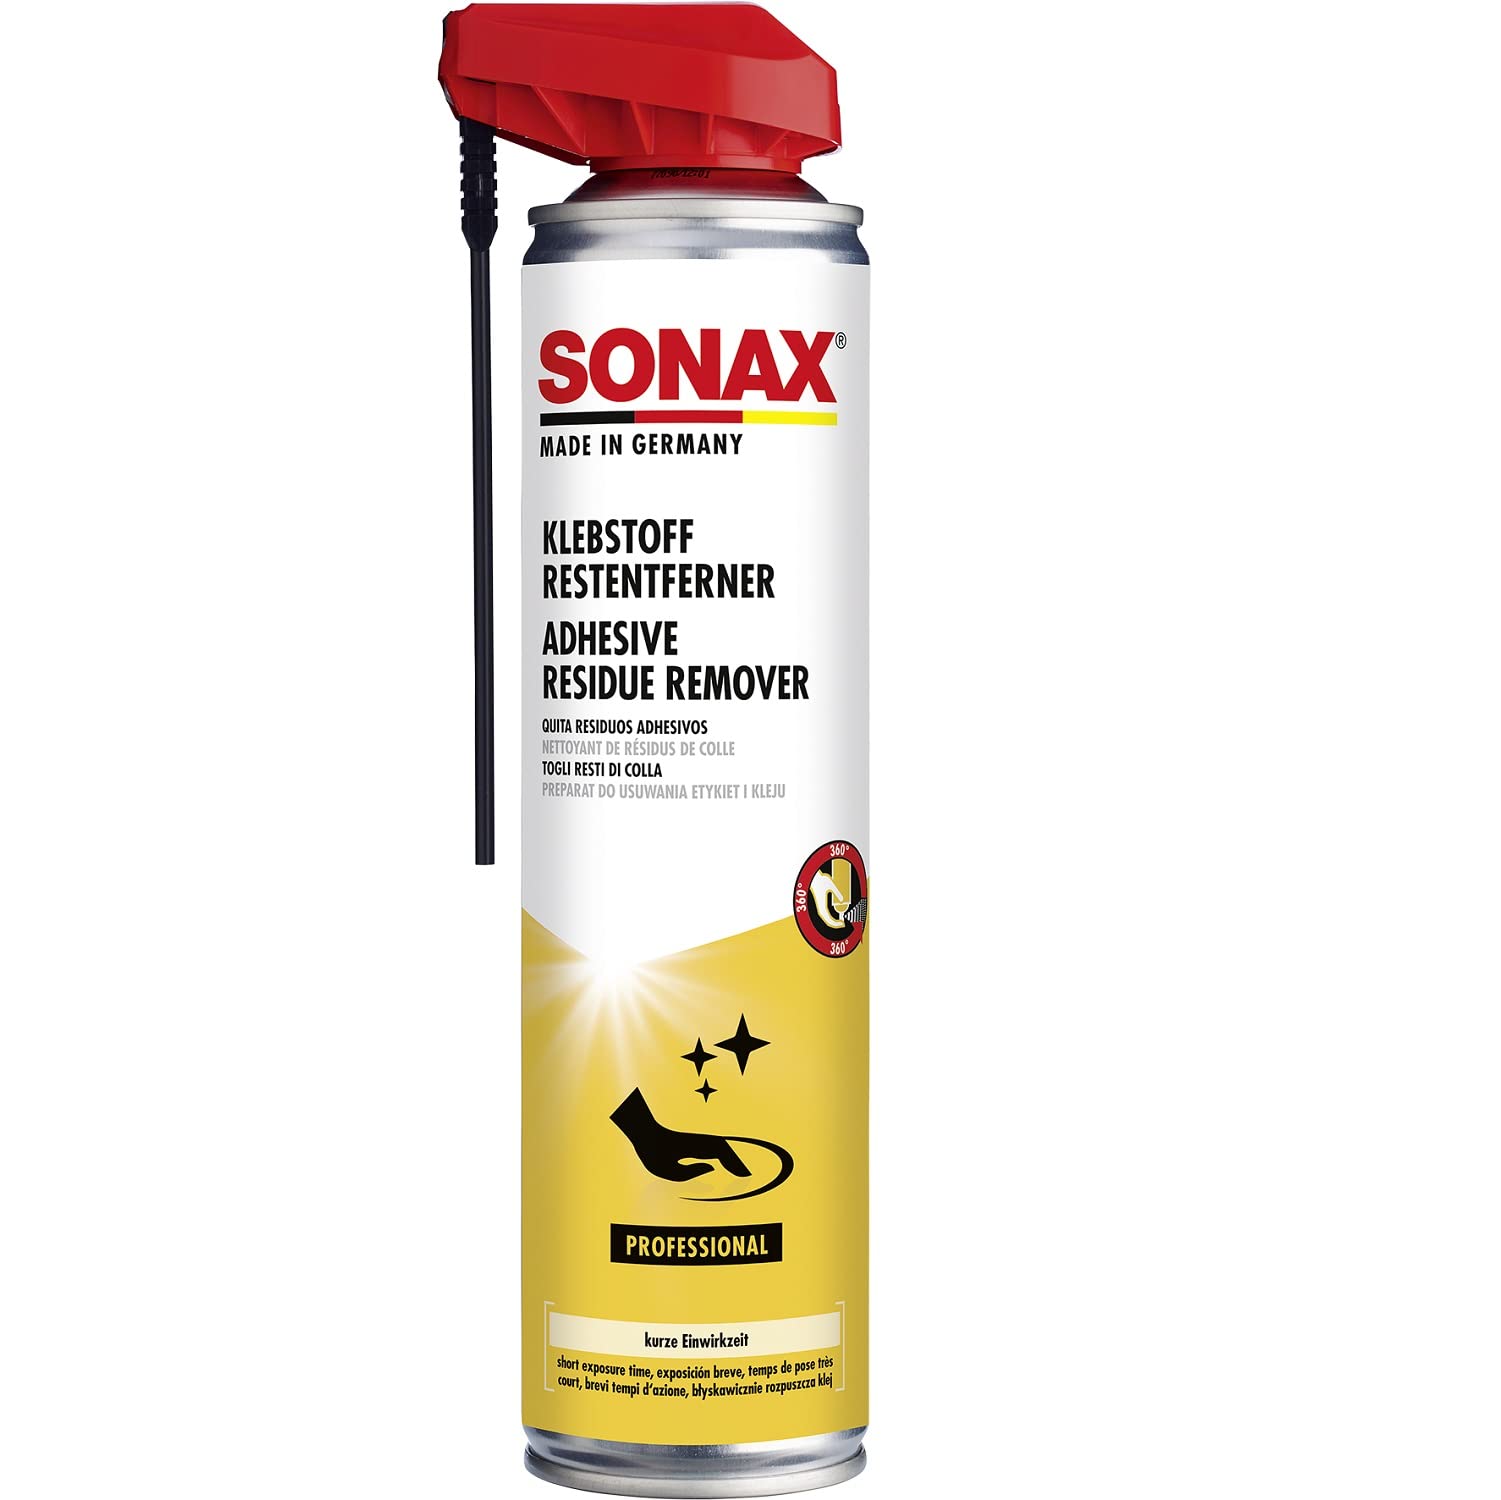 SONAX KlebstoffRestEntferner mit EasySpray (400 ml) Rückstandsloser Klebstoffentferner von Klebstoffresten wie z. B. Etiketten, Folien, Aufklebern, usw. | Art-Nr. 04773000 von SONAX